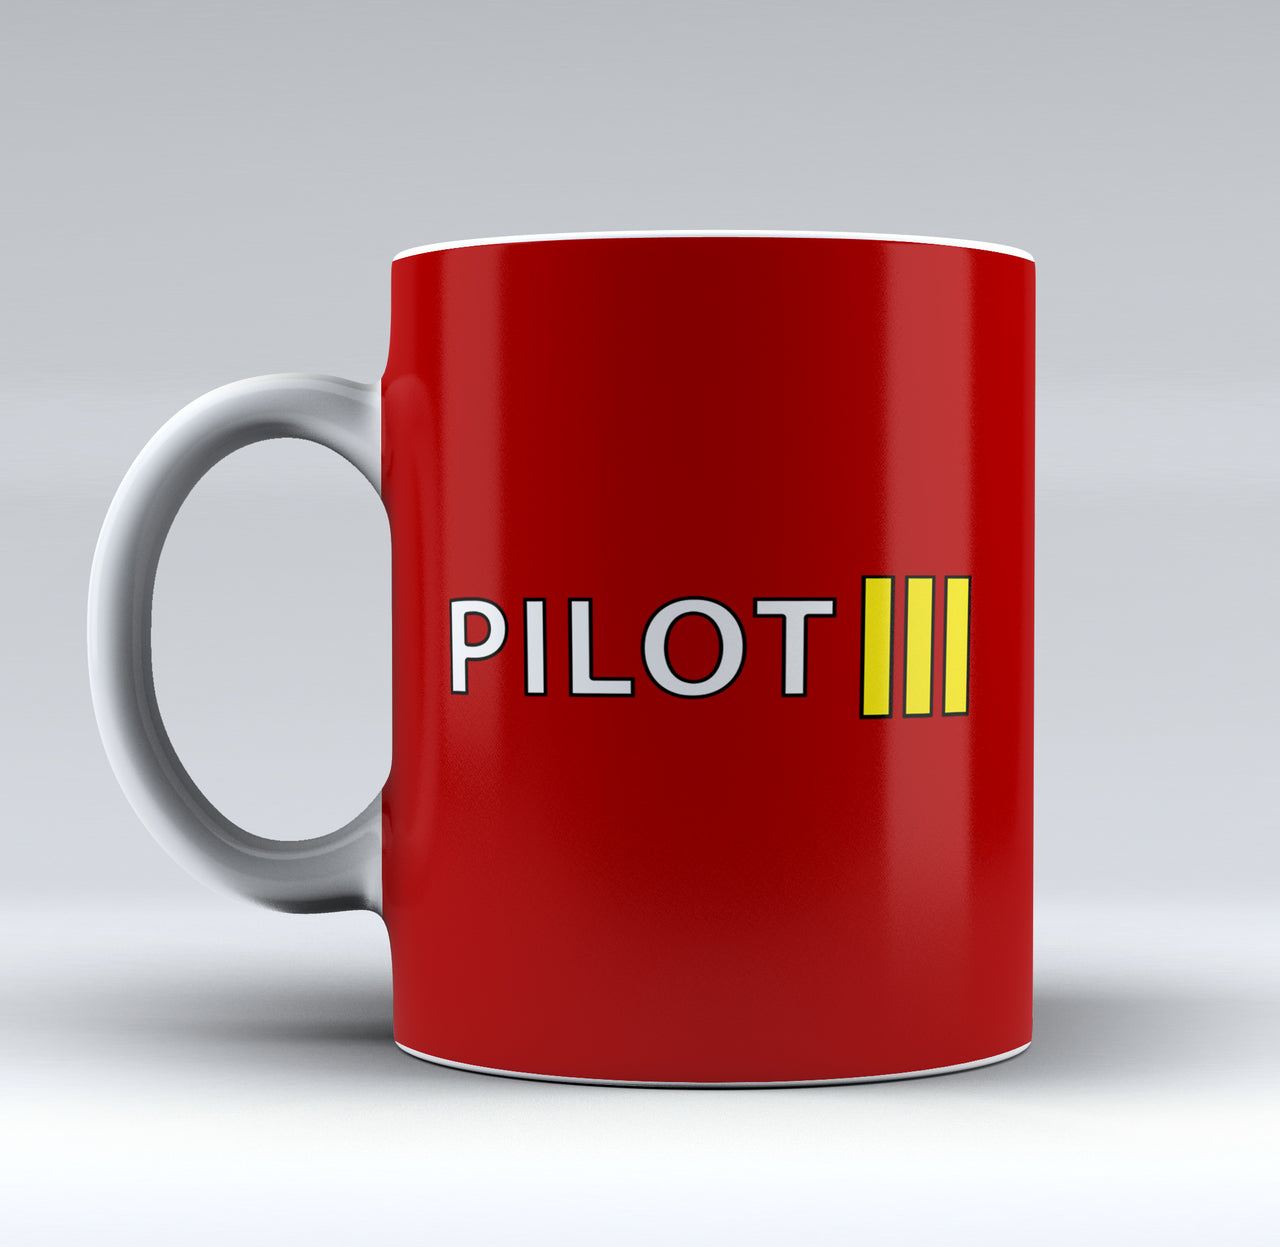 Pilot & Stripes (3 Lines) Designed Mugs